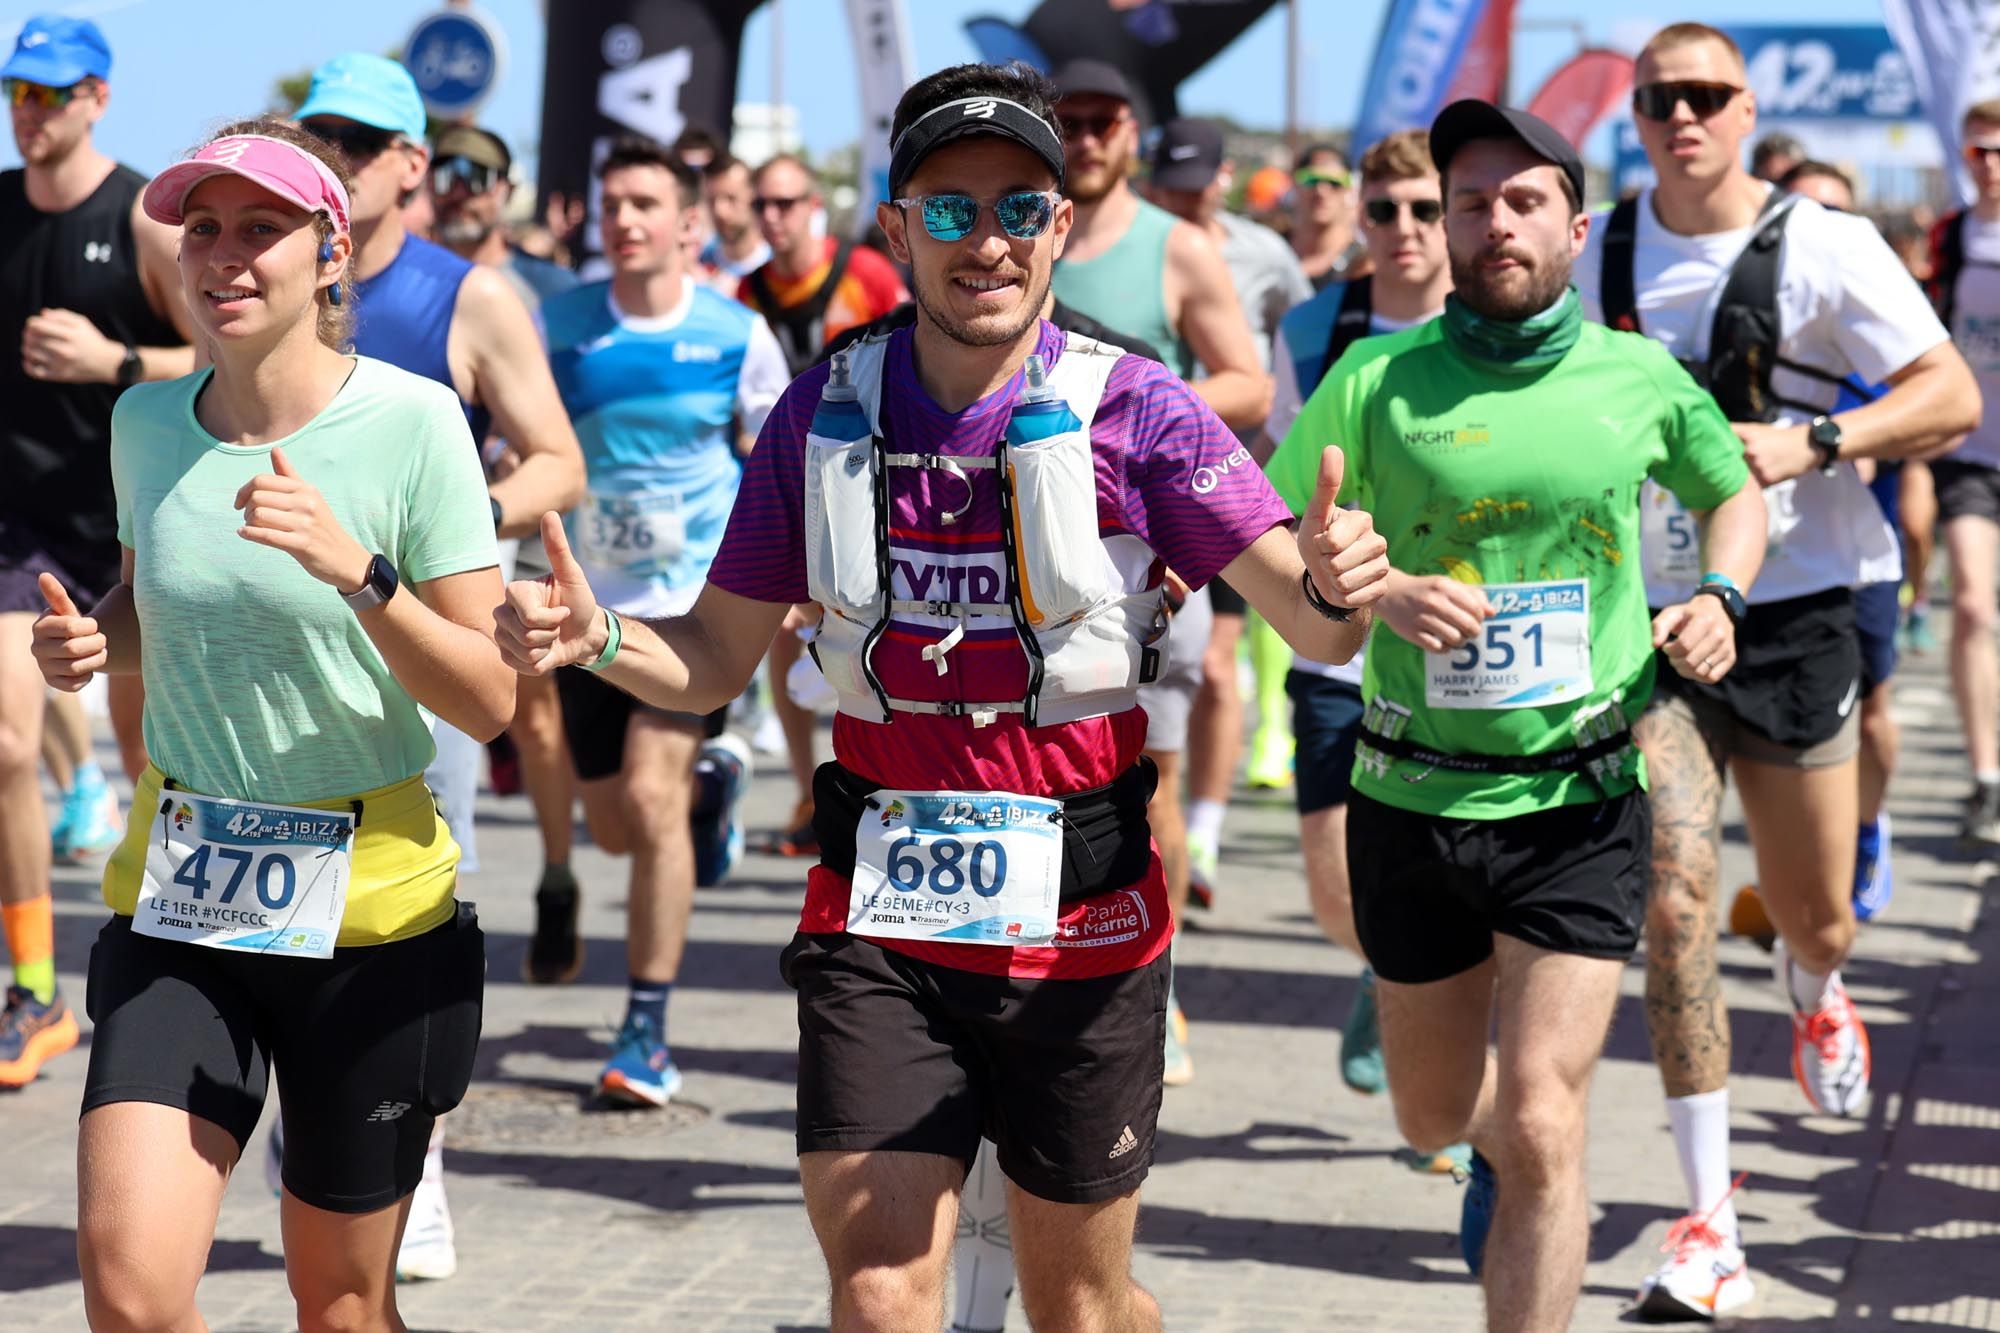 El Santa Eulària Ibiza Marathon, en imágenes